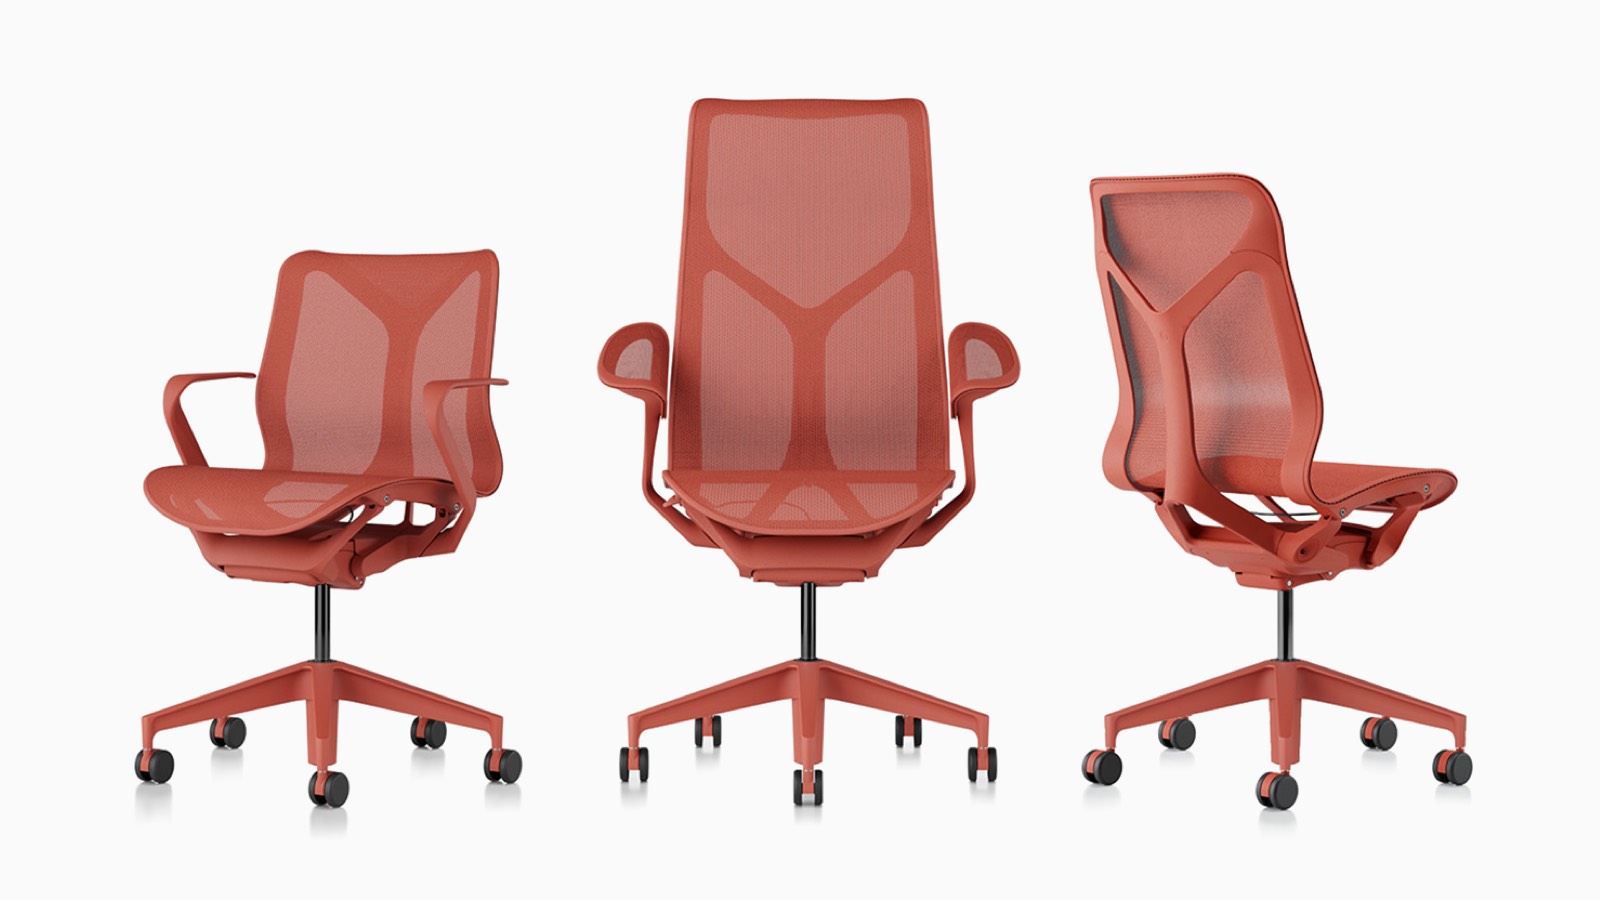 Cosm ergonomische Bürostühle mit niedriger Rückenlehne, hoher Rückenlehne und mittlerer Rückenlehne mit Federmaterialien, Untergestellen und Rahmen in Canyon-Rot.